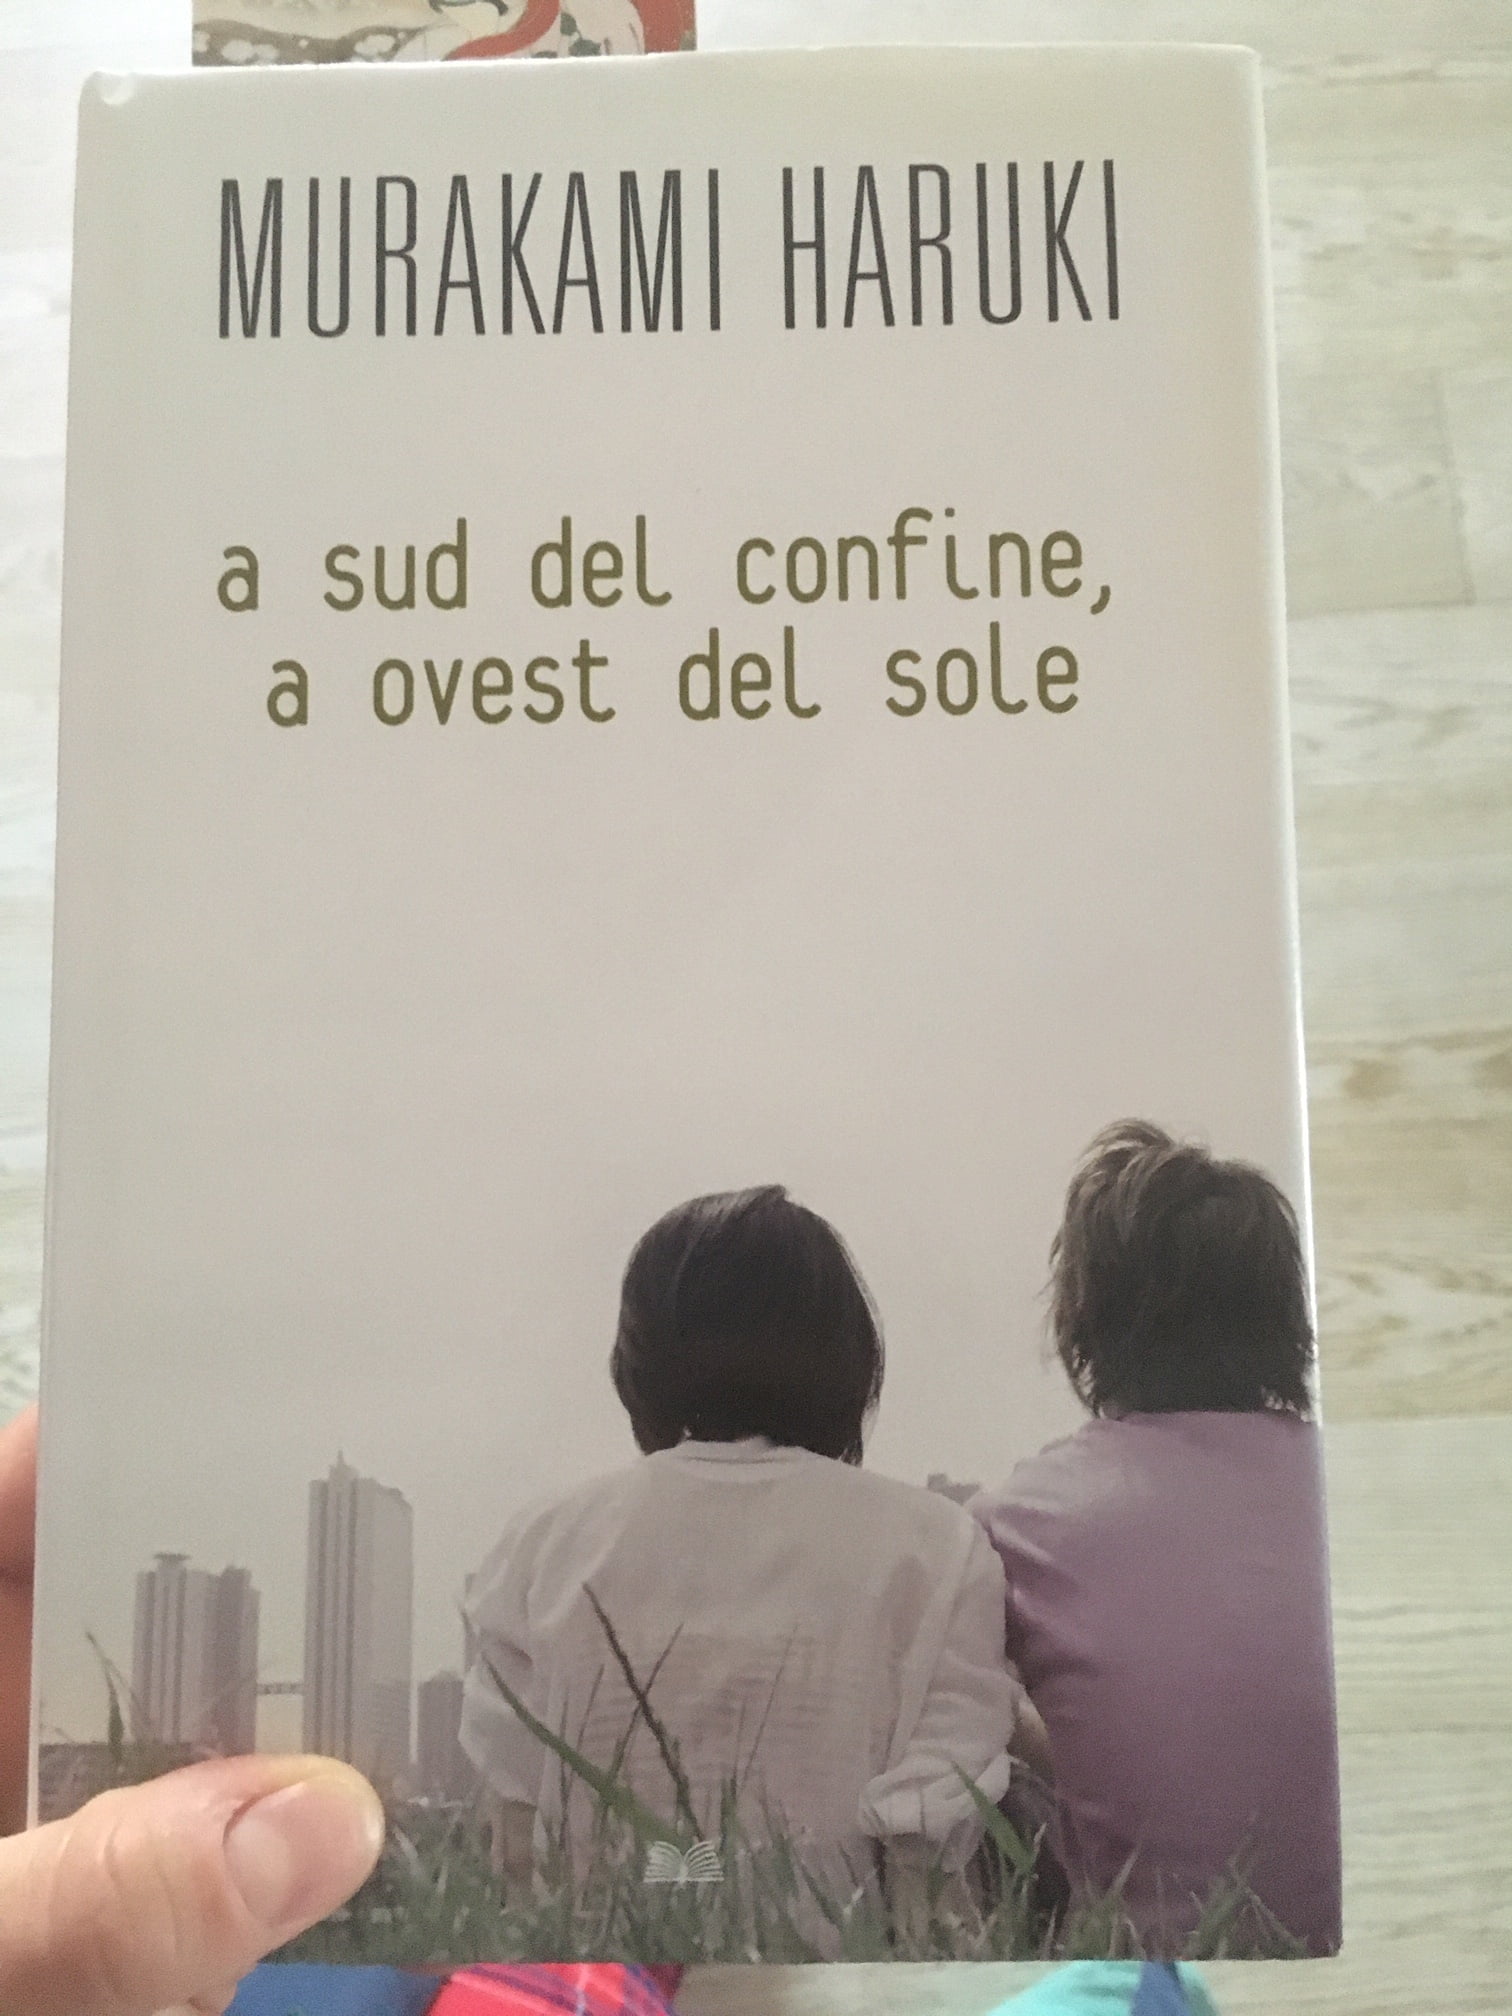 “A Sud del confine, a Ovest del sole” – Murakami Haruki